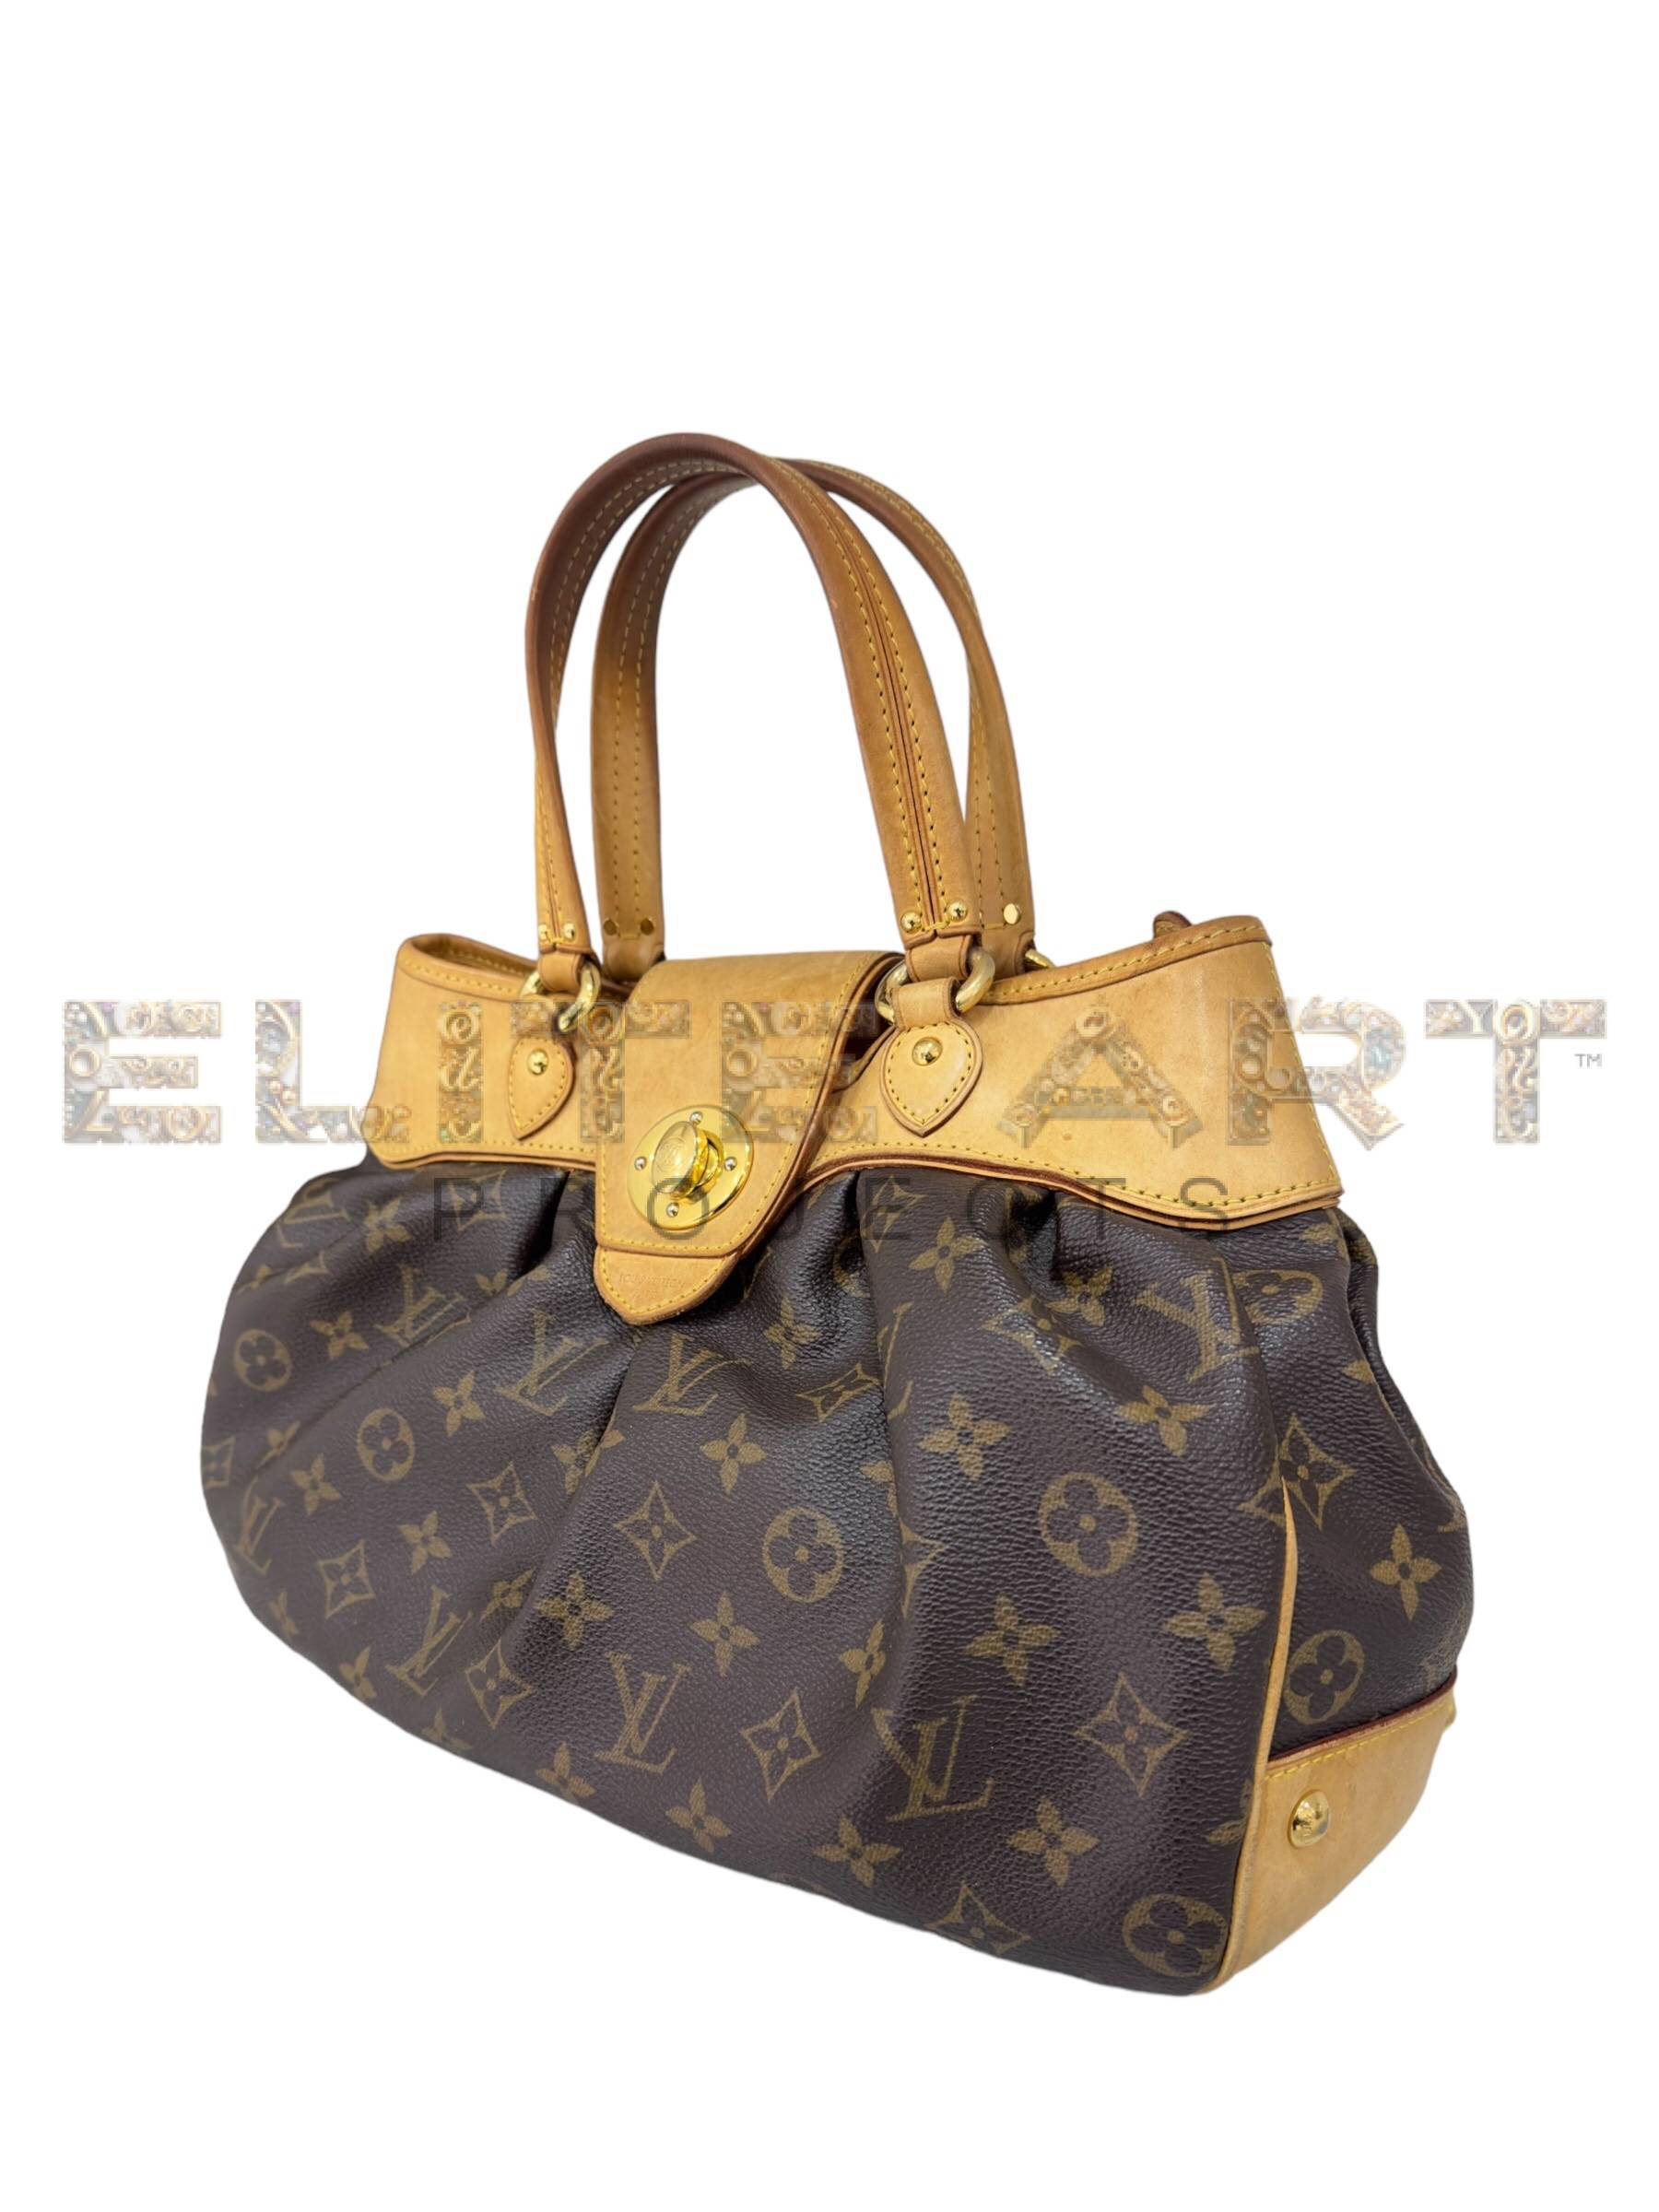 Louis Vuitton, Boetie, PM bag